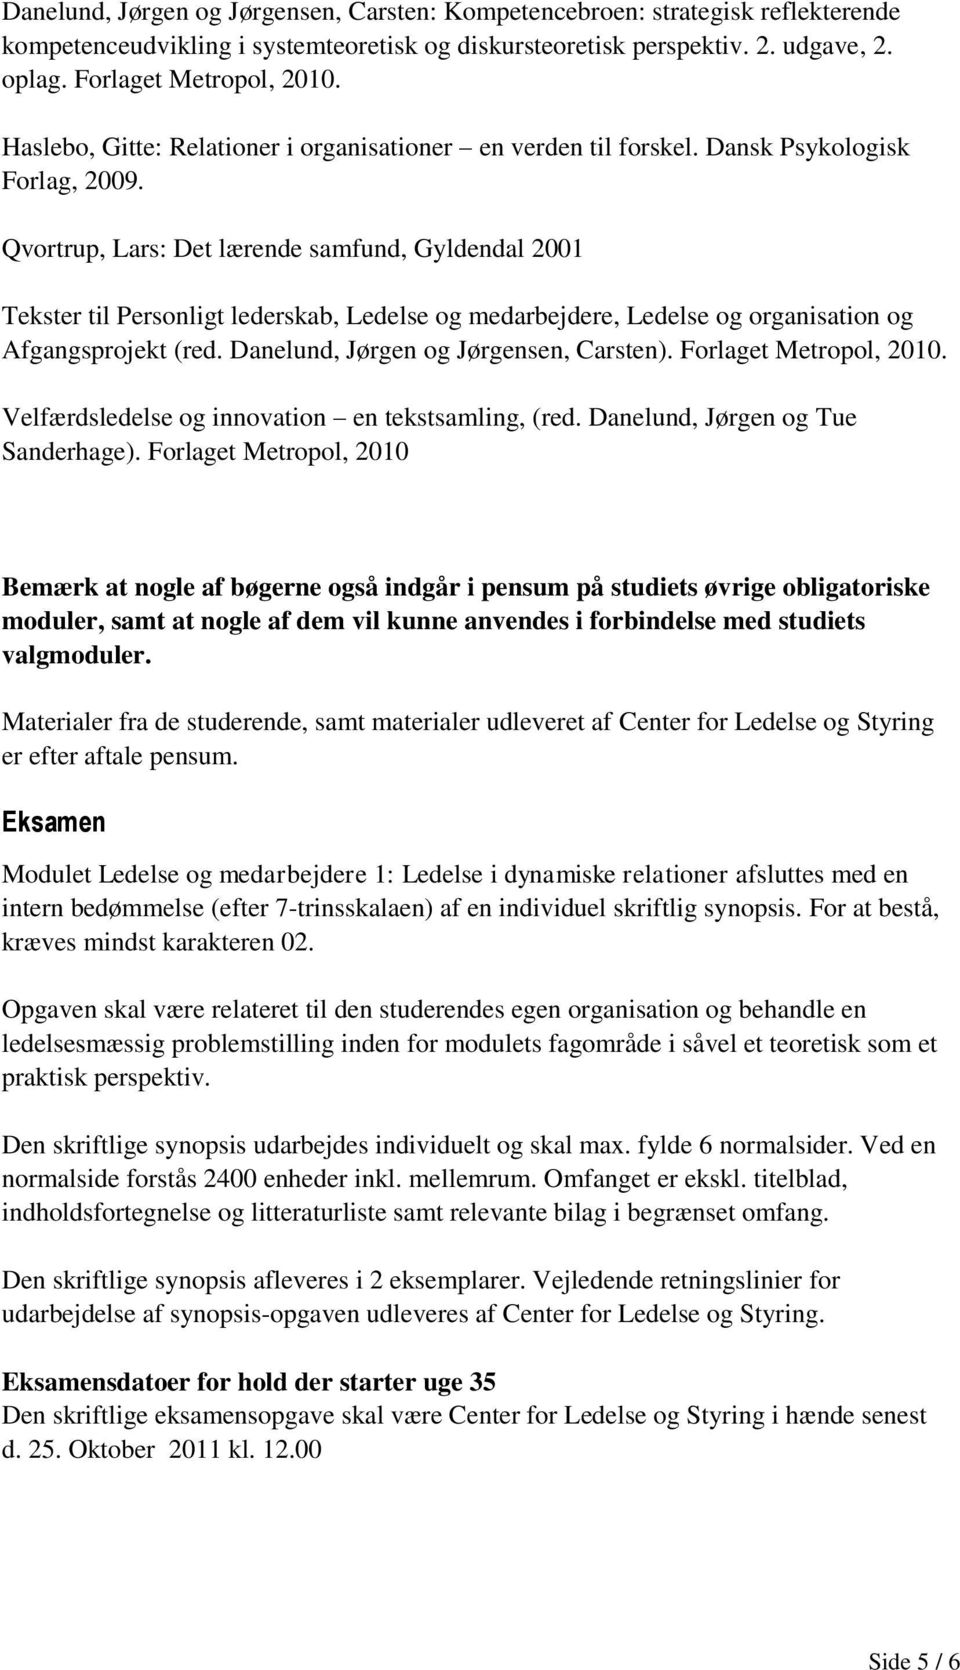 Qvortrup, Lars: Det lærende samfund, Gyldendal 2001 Tekster til Personligt lederskab, Ledelse og medarbejdere, Ledelse og organisation og Afgangsprojekt (red. Danelund, Jørgen og Jørgensen, Carsten).